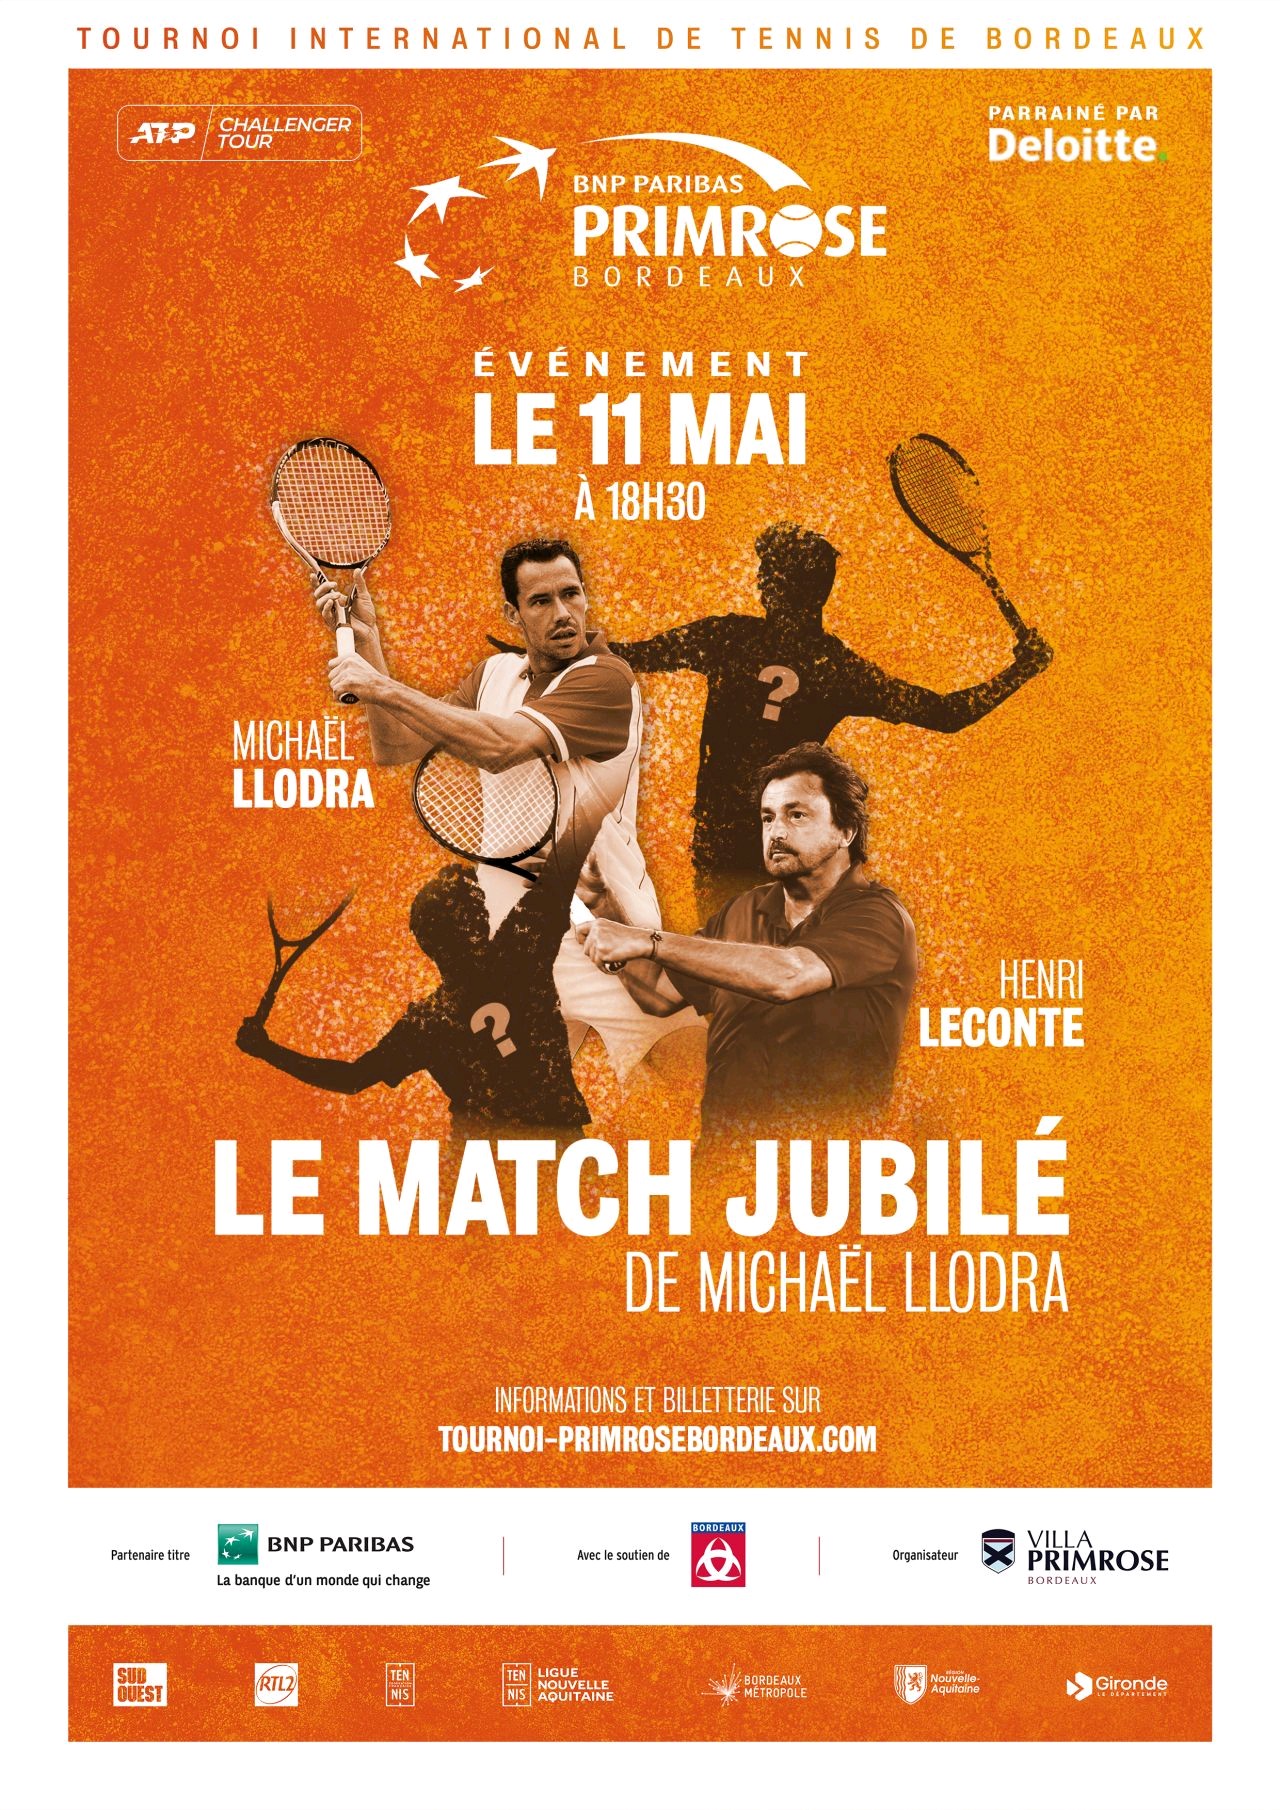 HL&Co - press conference - tournoi tennis - Bordeaux